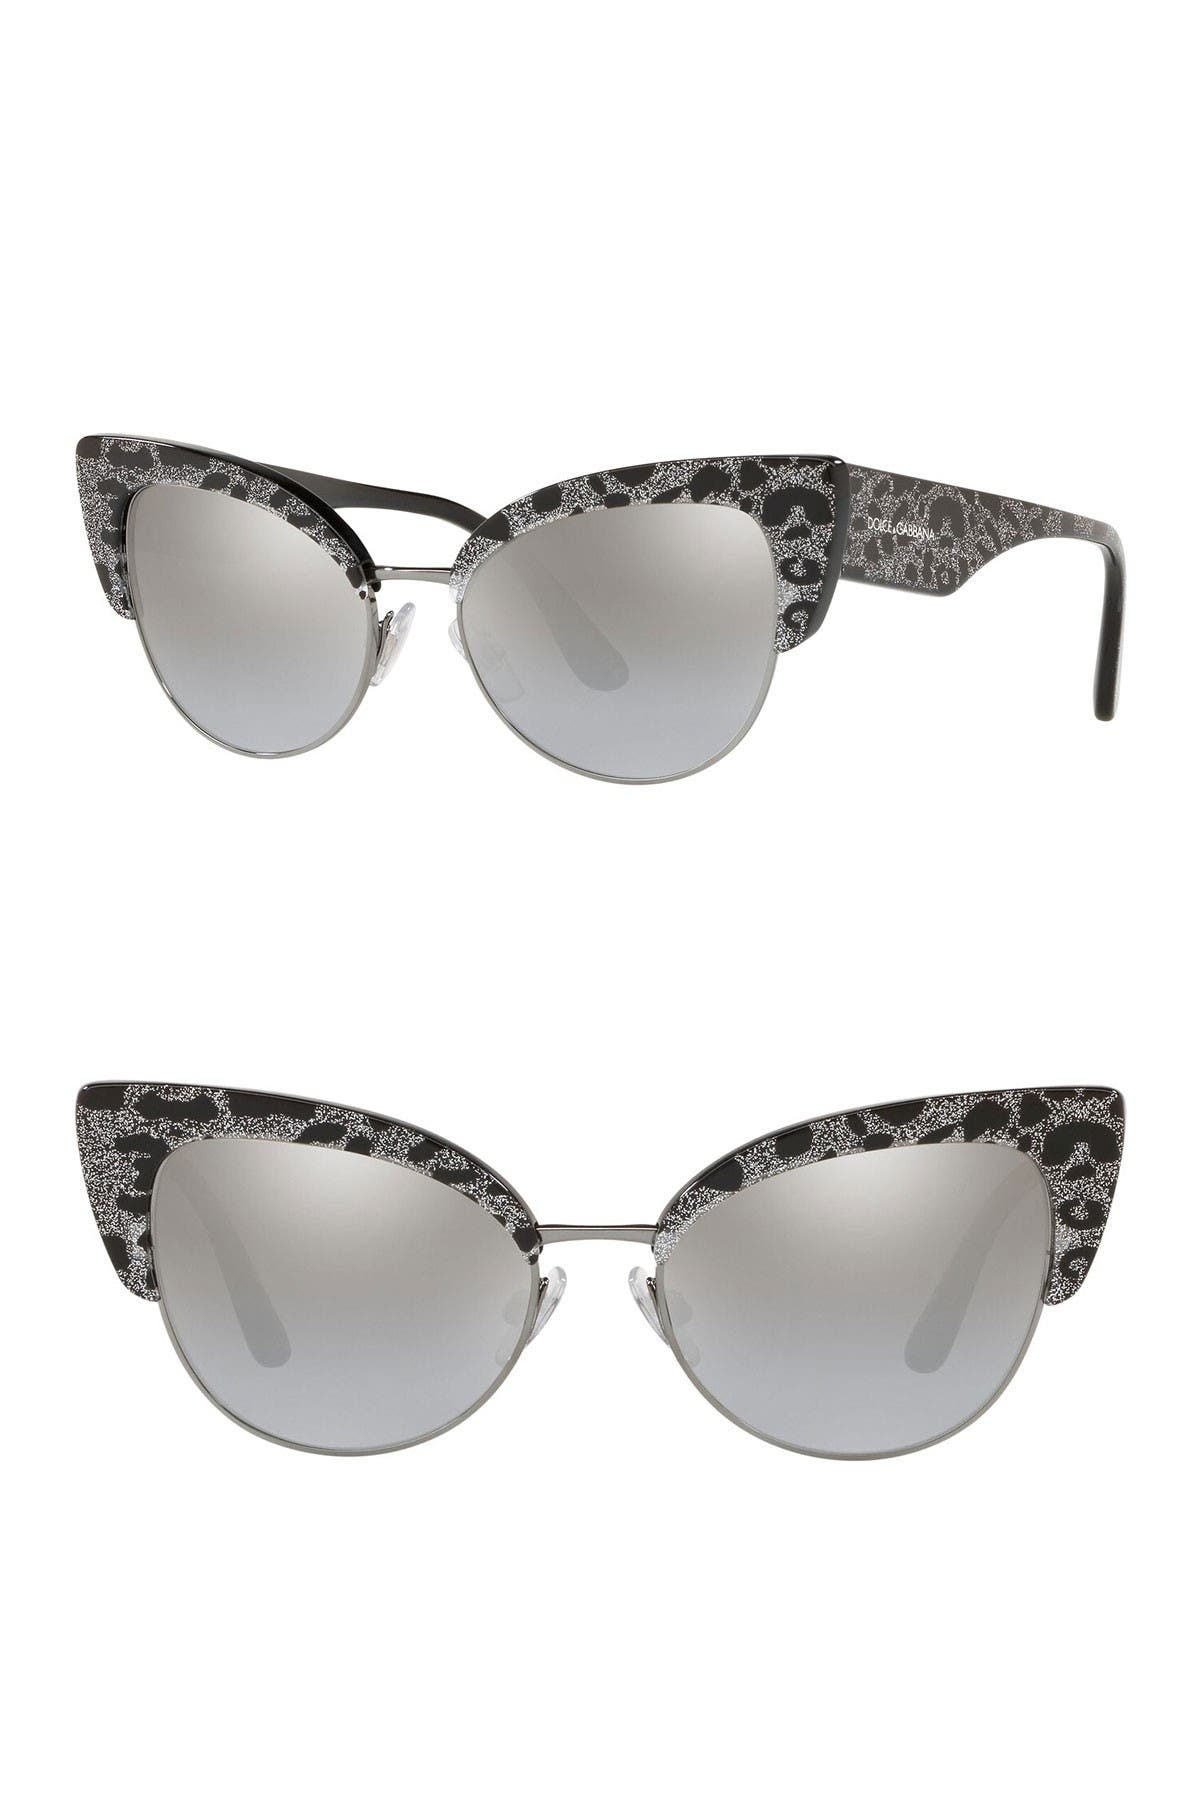 dolce gabbana cat eye sunglasses